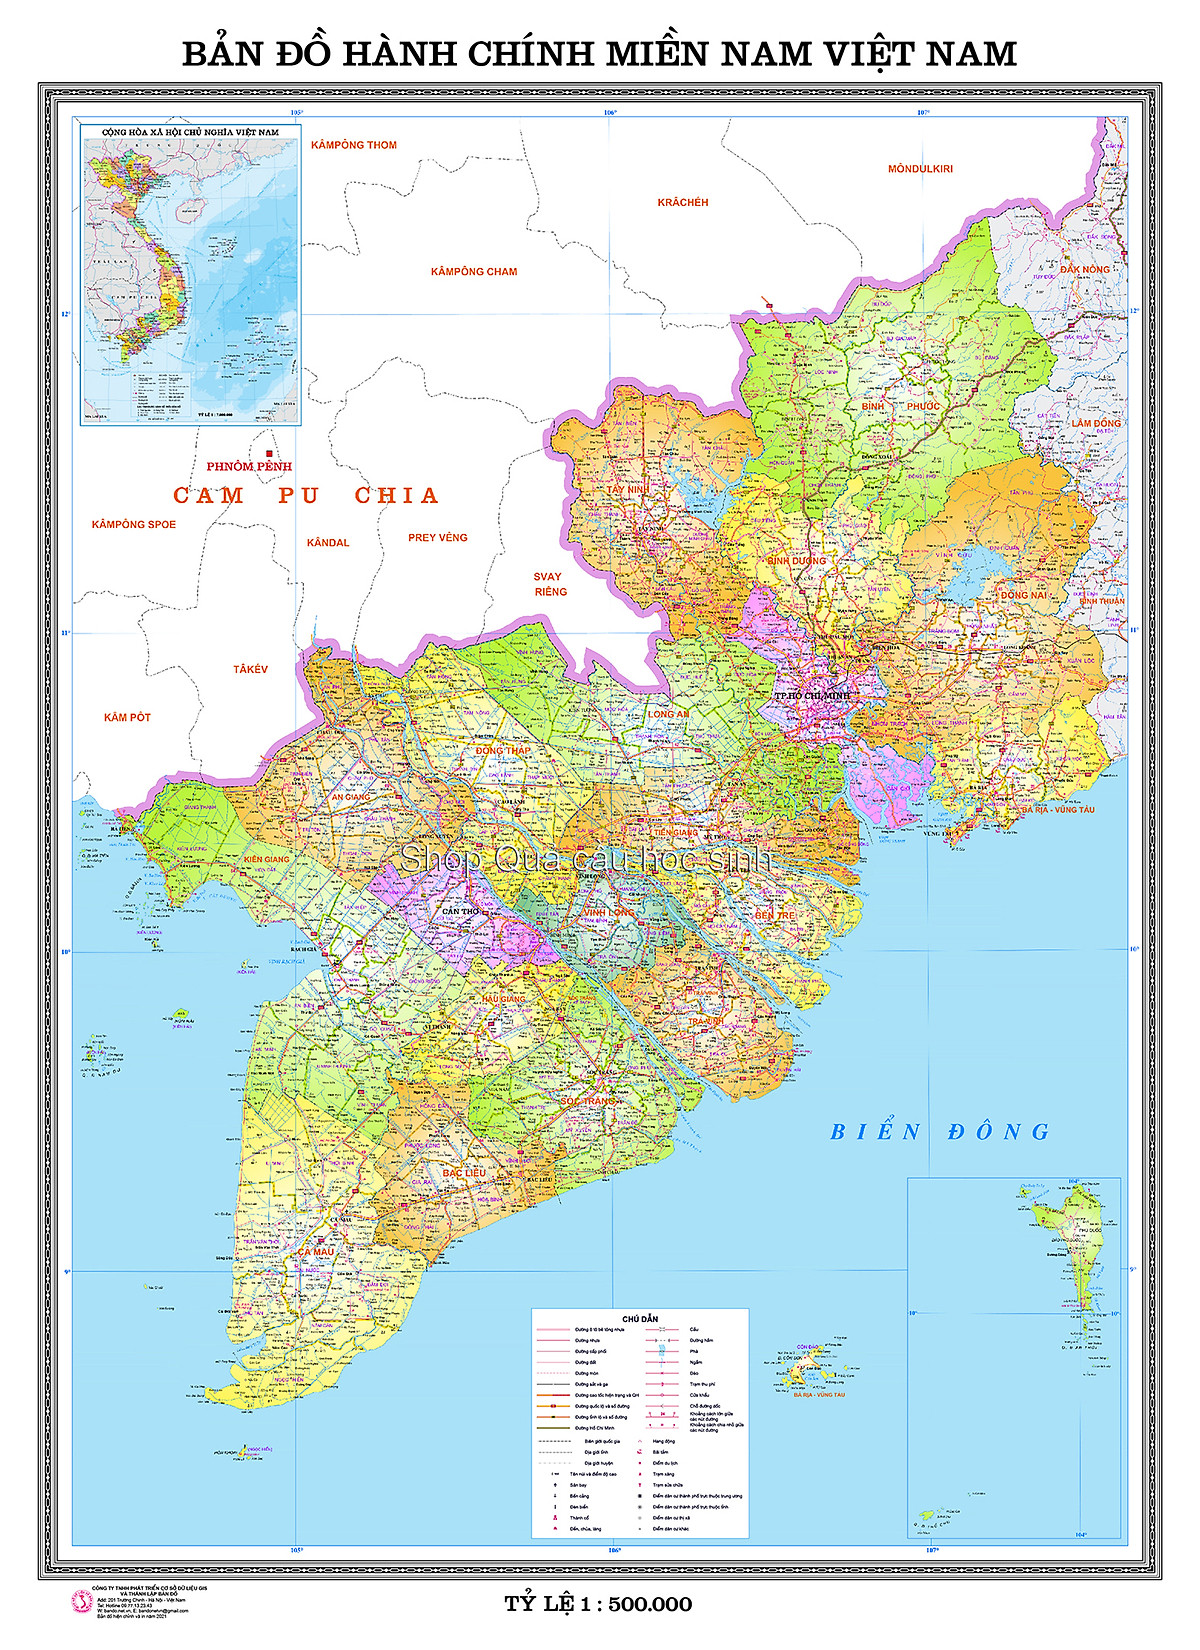 Với bản đồ hành chính miền Nam Việt Nam A0, bạn sẽ có được cái nhìn tổng quan về cấu trúc địa lý và hành chính của miền Nam. Từ đó, bạn có thể lập kế hoạch du lịch một cách hiệu quả với đầy đủ thông tin cần thiết và tránh bị lạc đường khi đi đến các địa điểm tham quan.